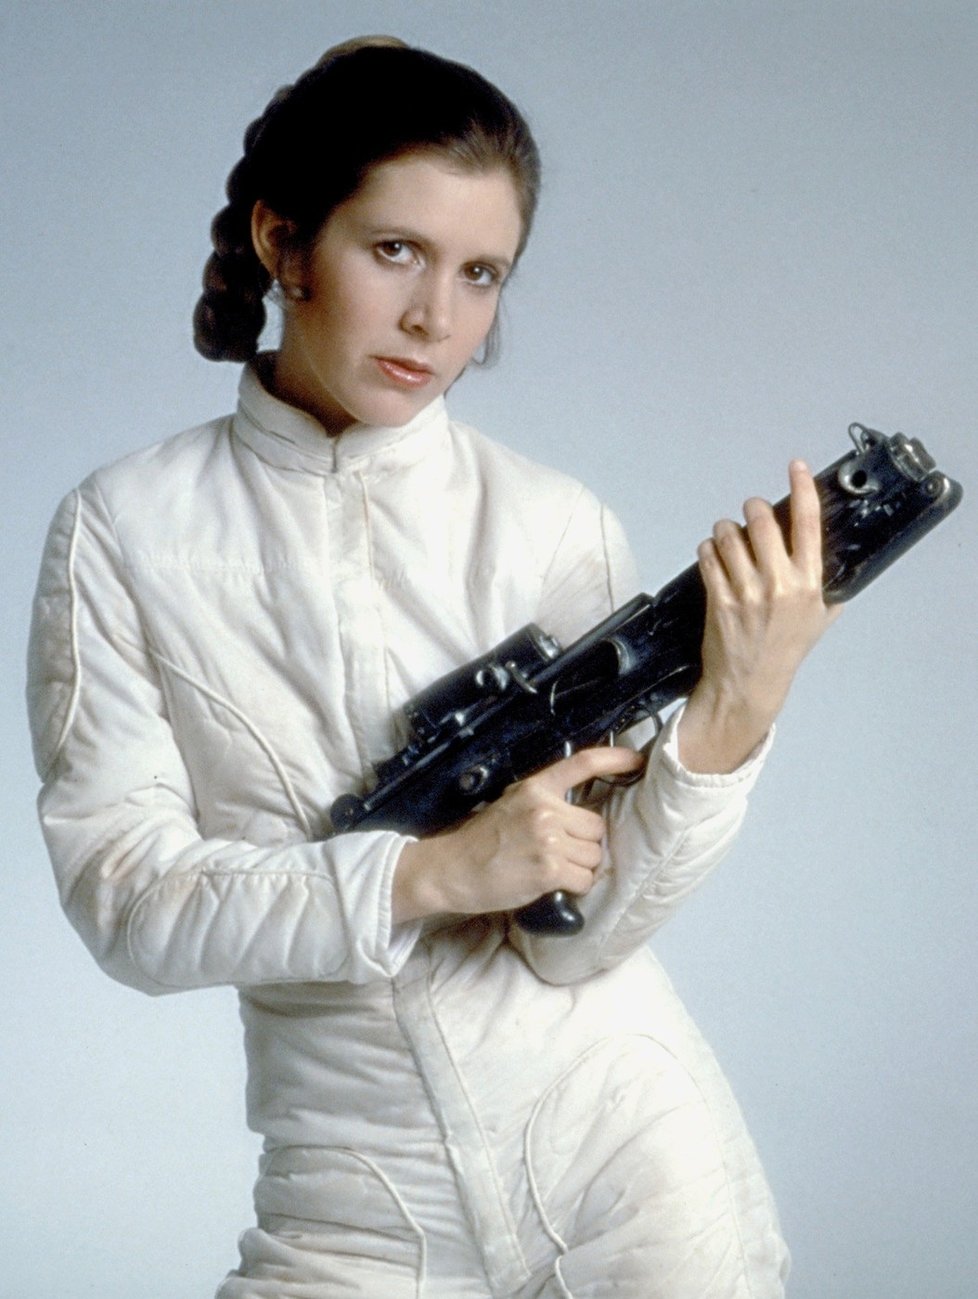 I Leia dostala do rukou zbraň.